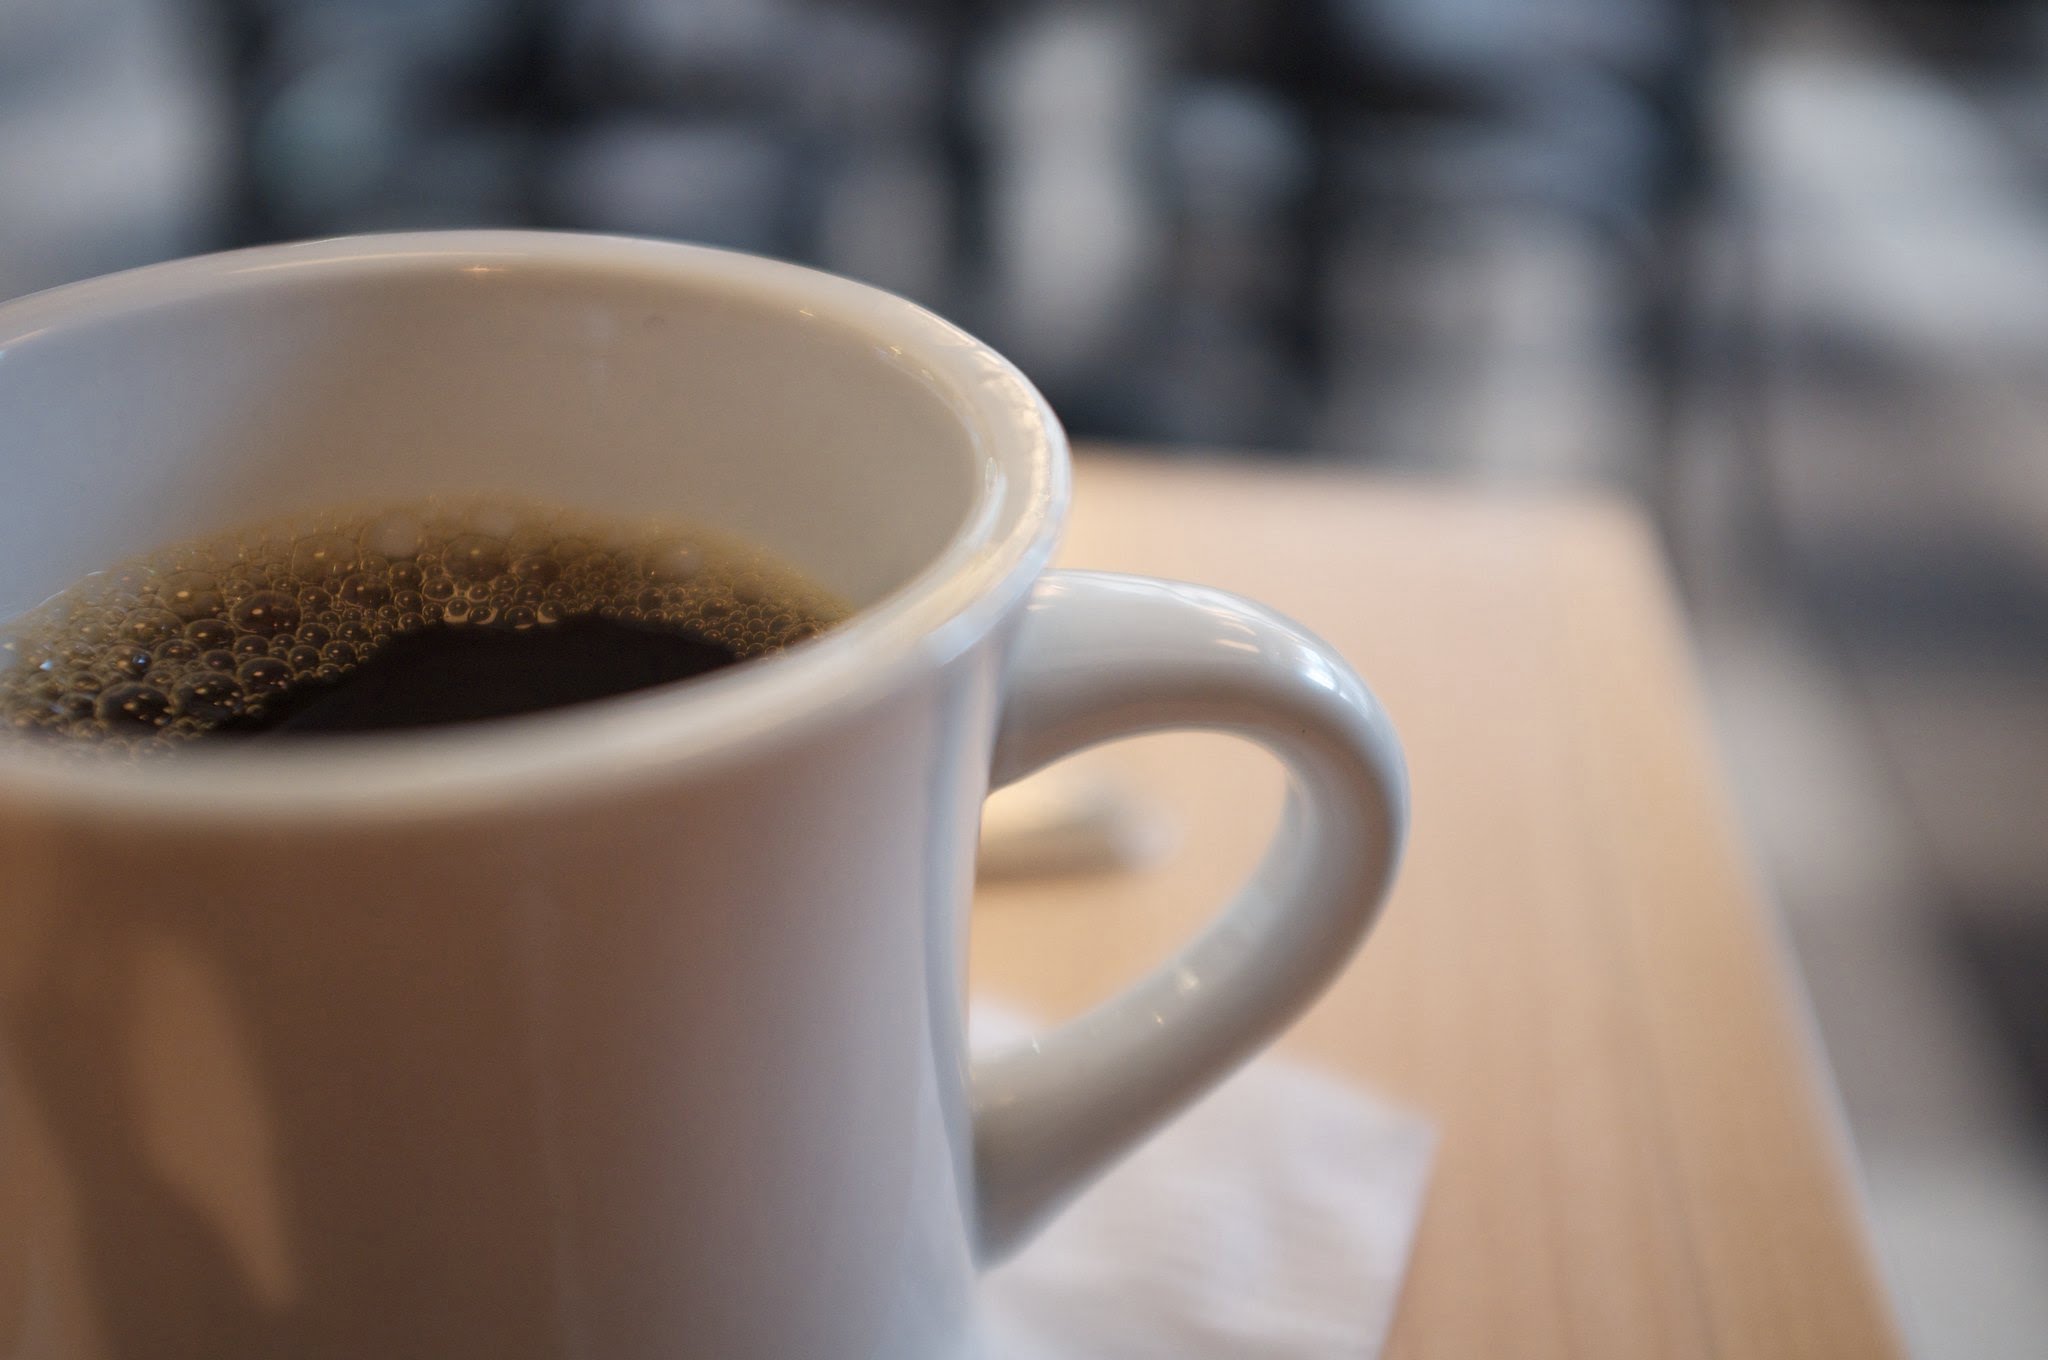 Hogares peruanos consumen 40 tazas de café en 12 meses